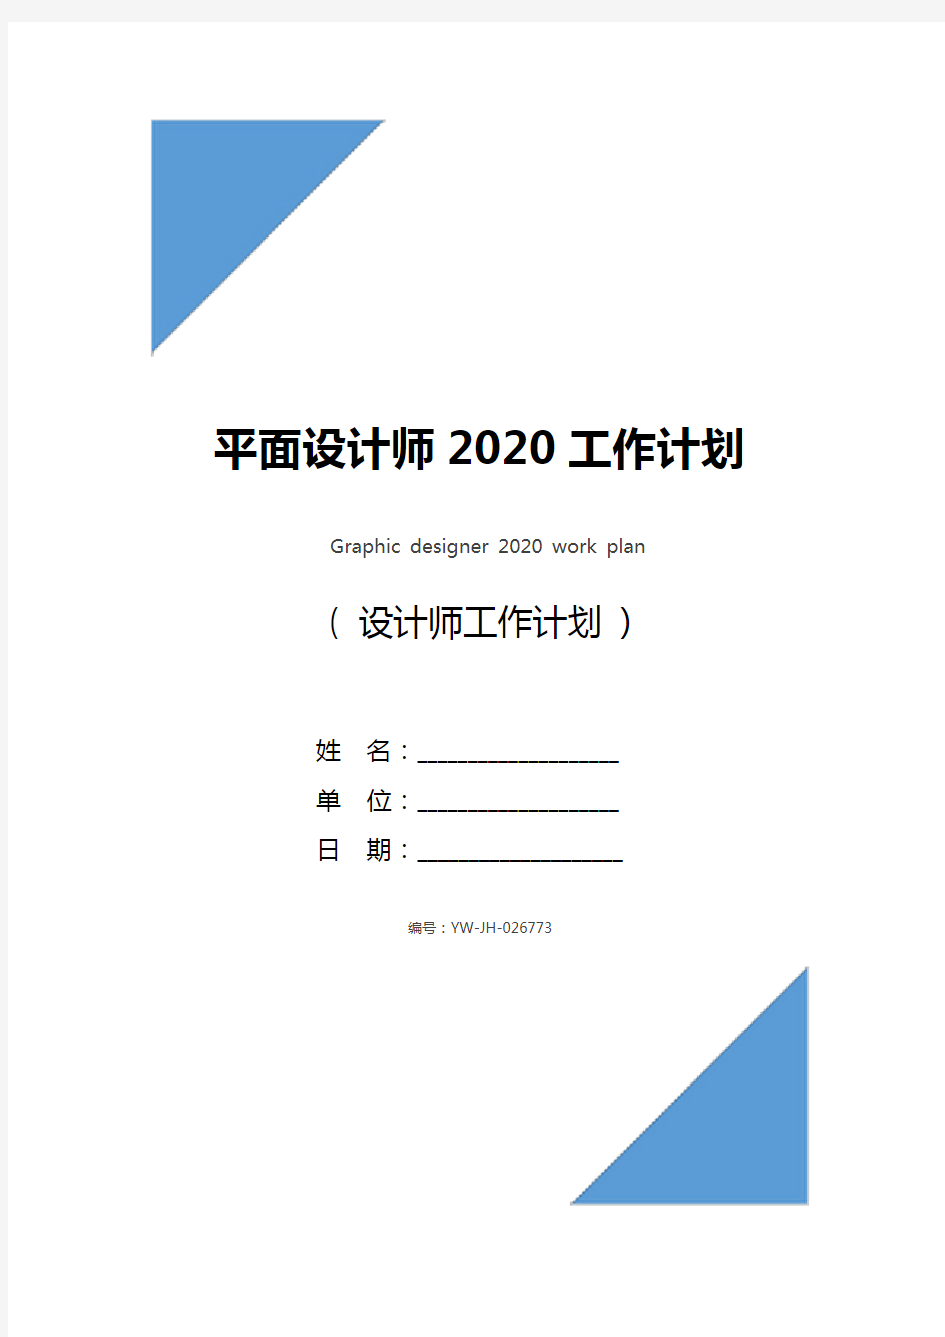 平面设计师2020工作计划